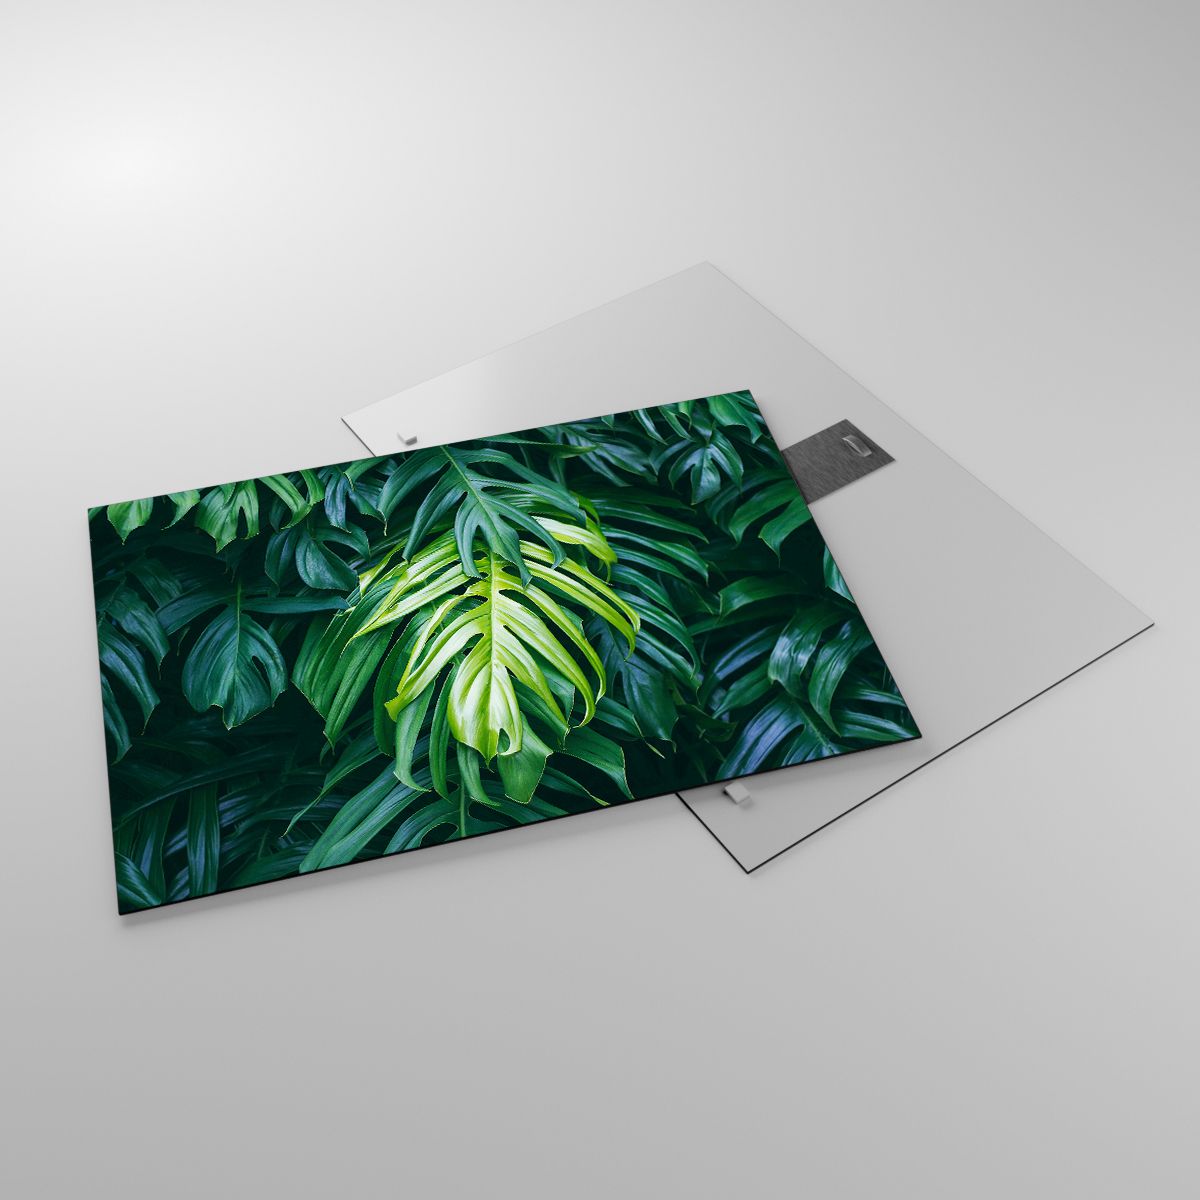 Glasbild Tropische Pflanze, Glasbild Monstera-Blatt, Glasbild Natur, Glasbild Grünes Blatt, Glasbild Hawaii